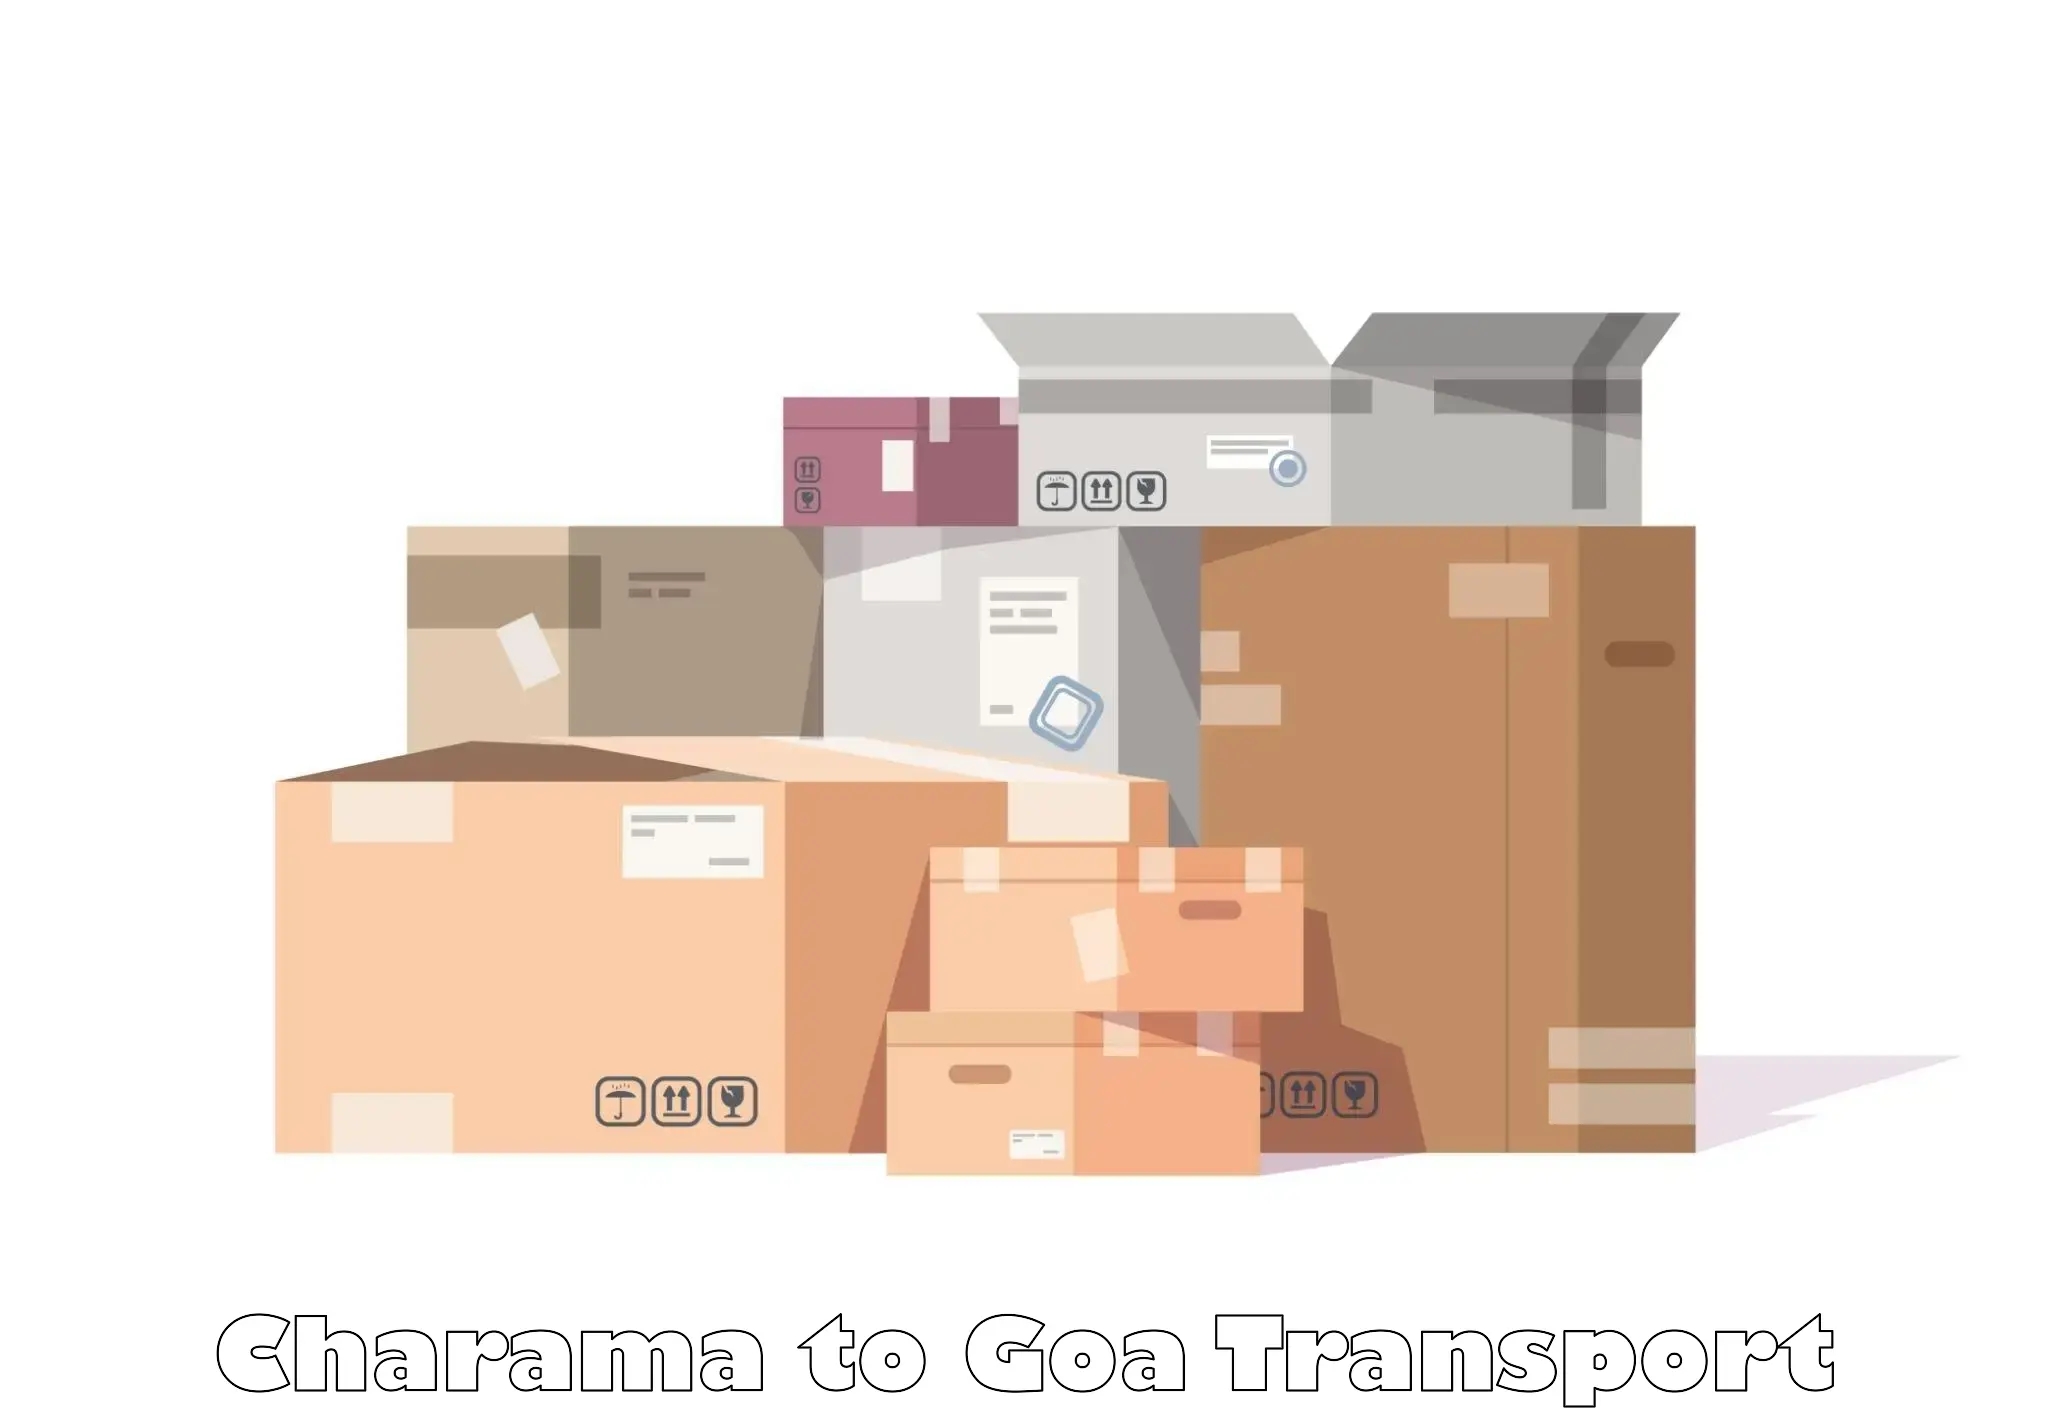 Lorry transport service Charama to Canacona